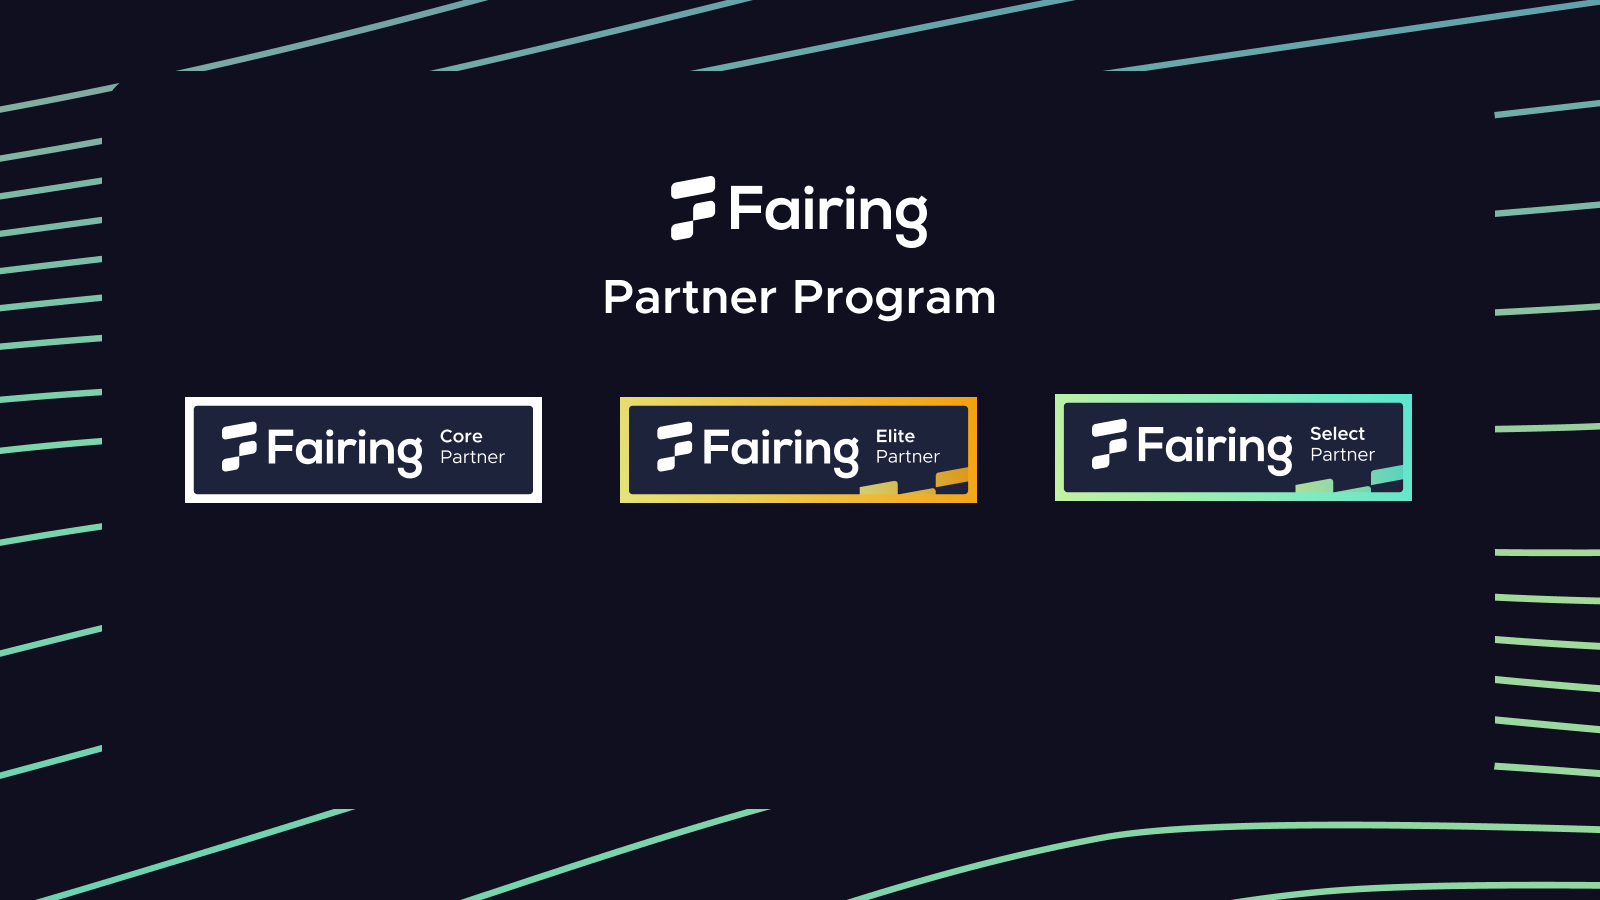 Fairing's Partner Program is now live!